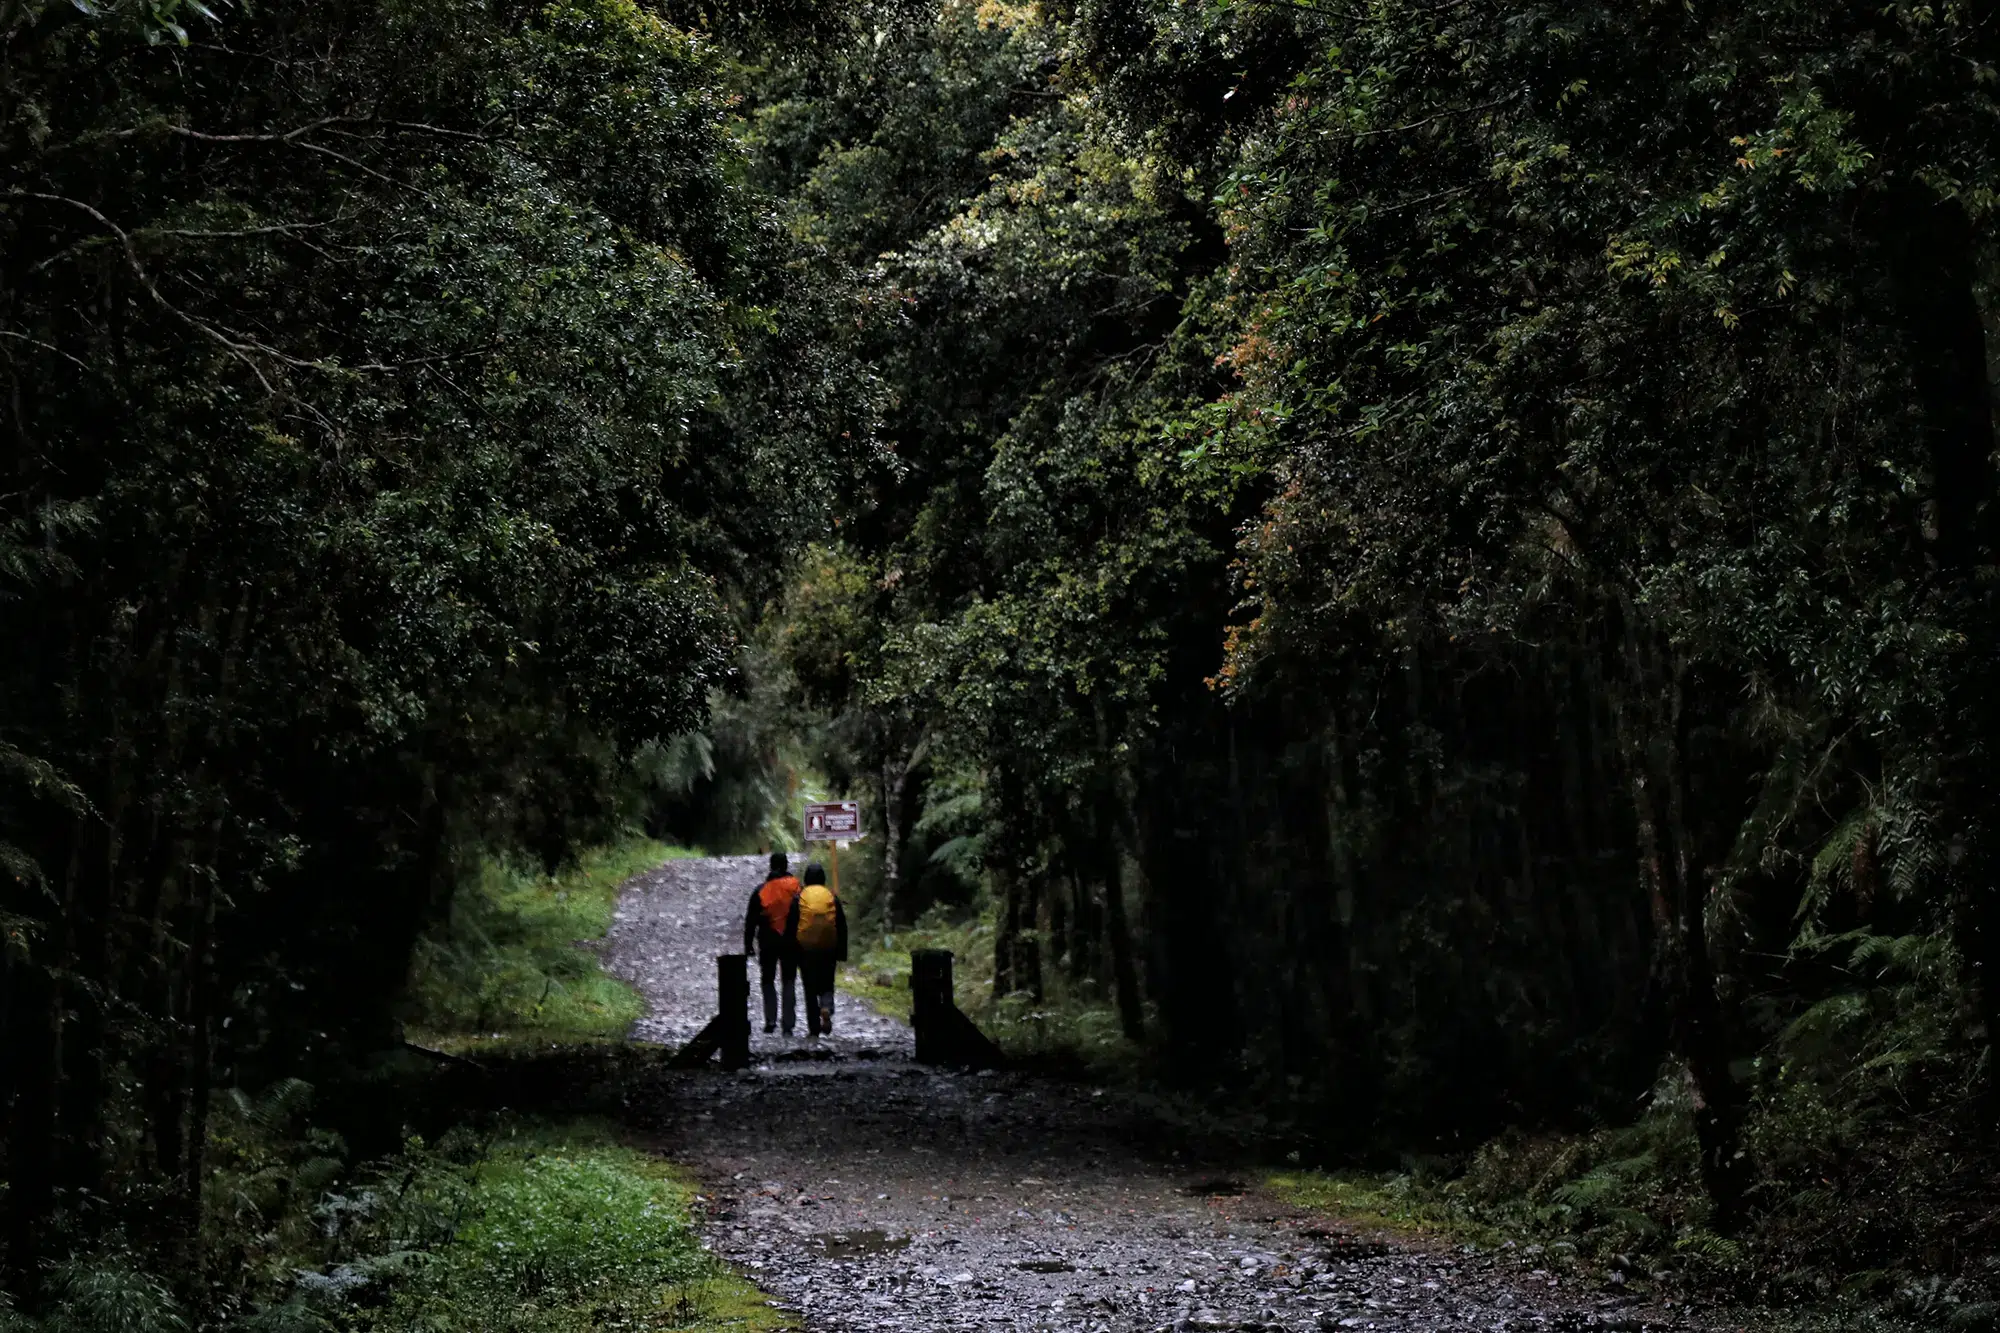 Alerce Milenatio Trail - Chili